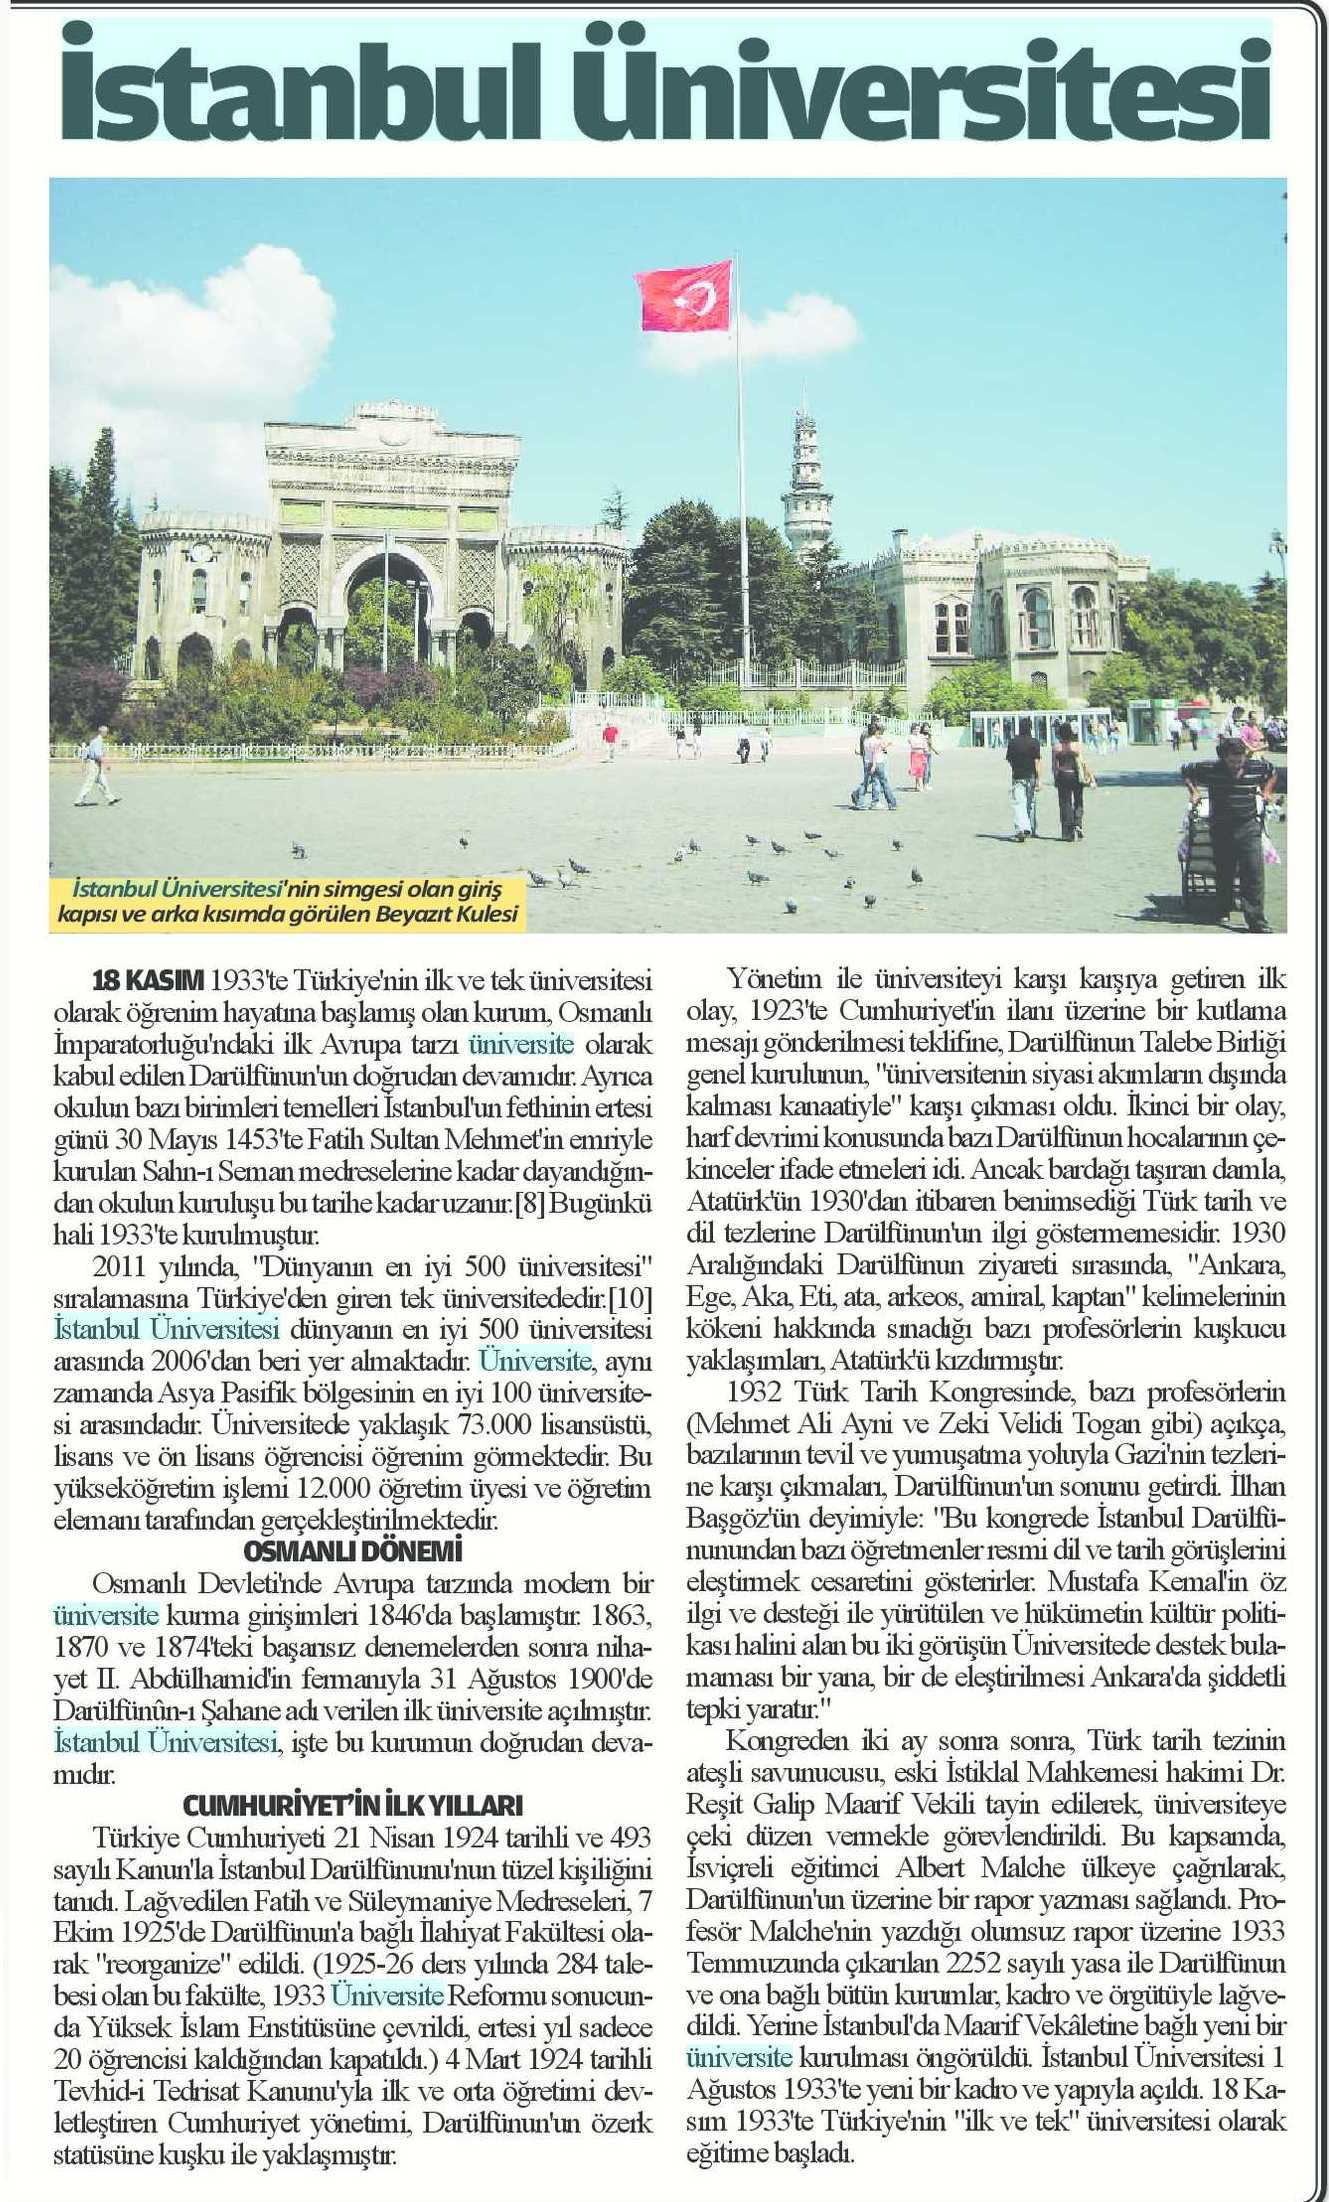 ISTANBUL ÜNIVERSITESI Yayın Adı : Antalya Yeni Alanya